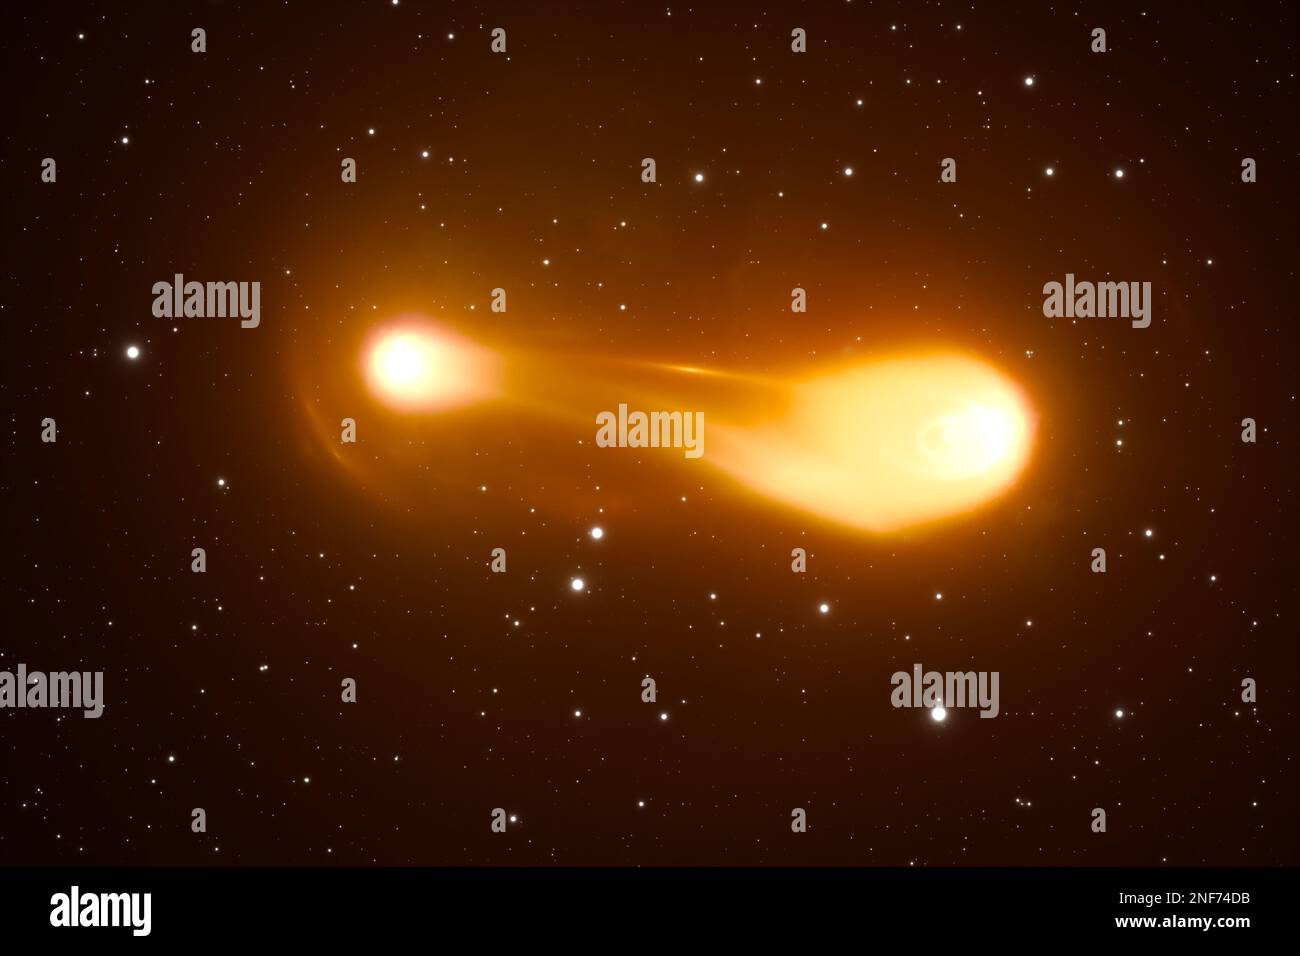 La paire d'étoiles se trouve sur un parcours de collision en spirale. Fusion de deux étoiles. 3D Illustration Banque D'Images